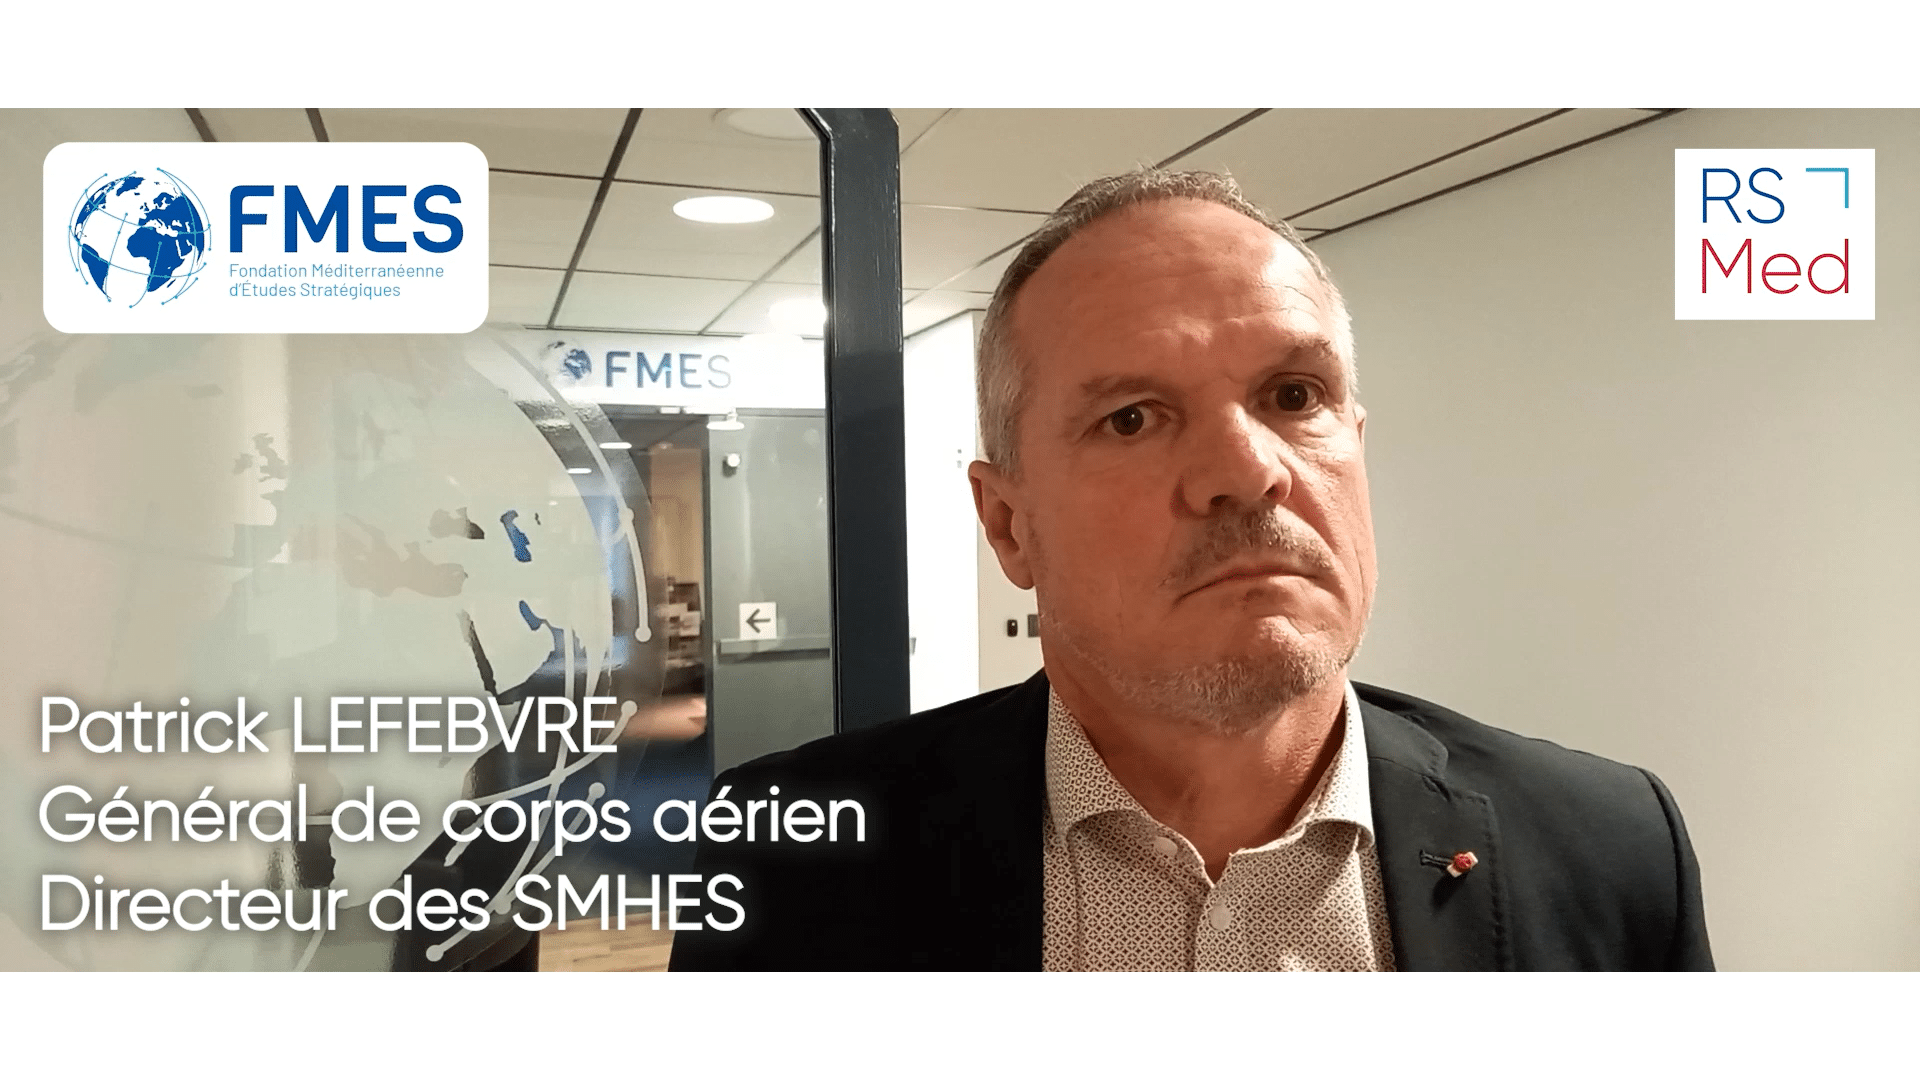 Patrick Lefebvre, Général de corps aérien et Directeur des SMHES, nous parle des RSMed